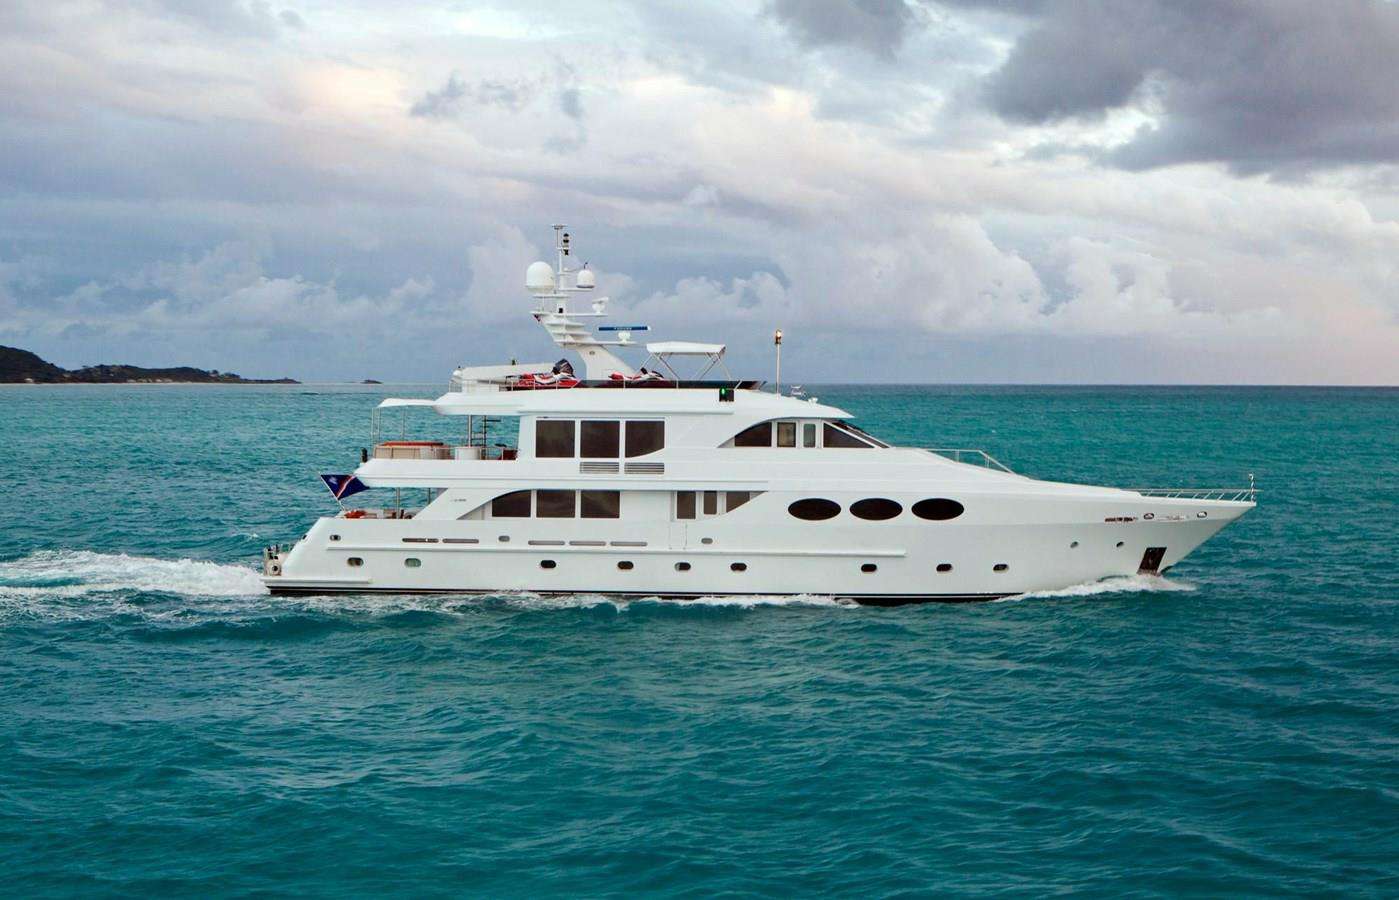 LAST CALL - Yacht Charter Canada & Boat hire in Alaska, Bahamas, Mexico 1